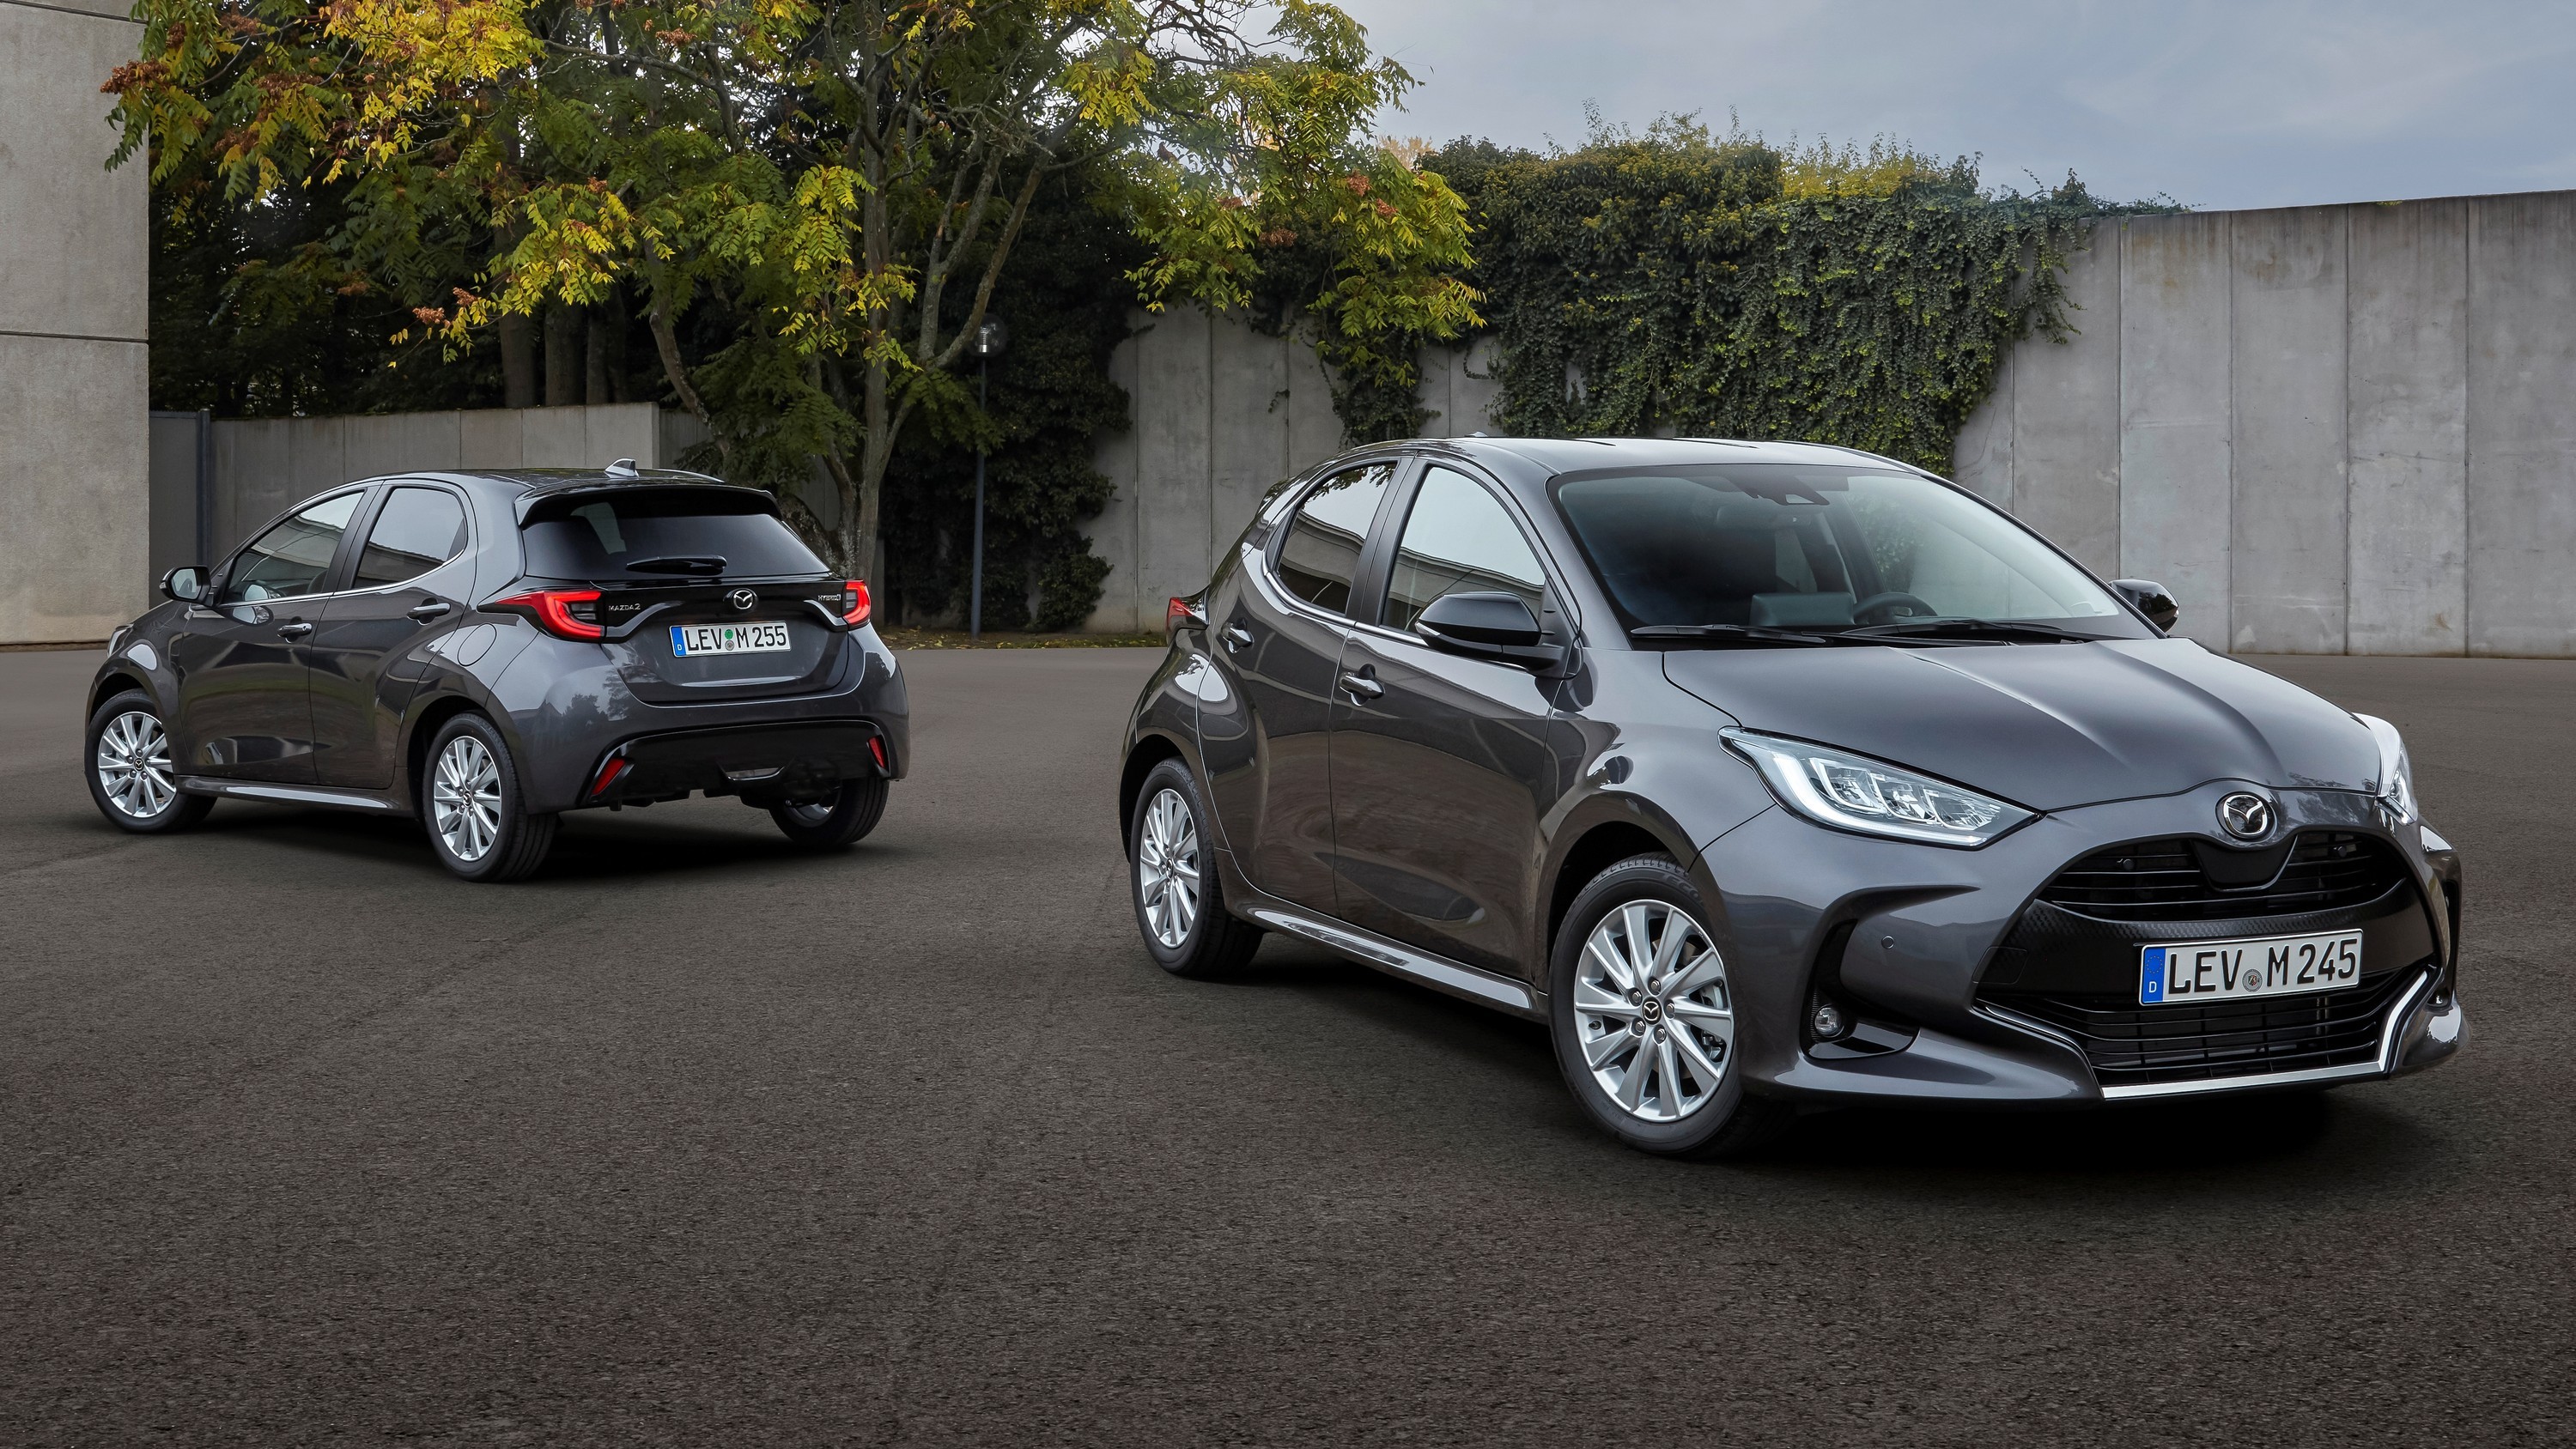 Очередная «подмена»: новая Mazda2 для Европы оказалась клоном Toyota Yaris